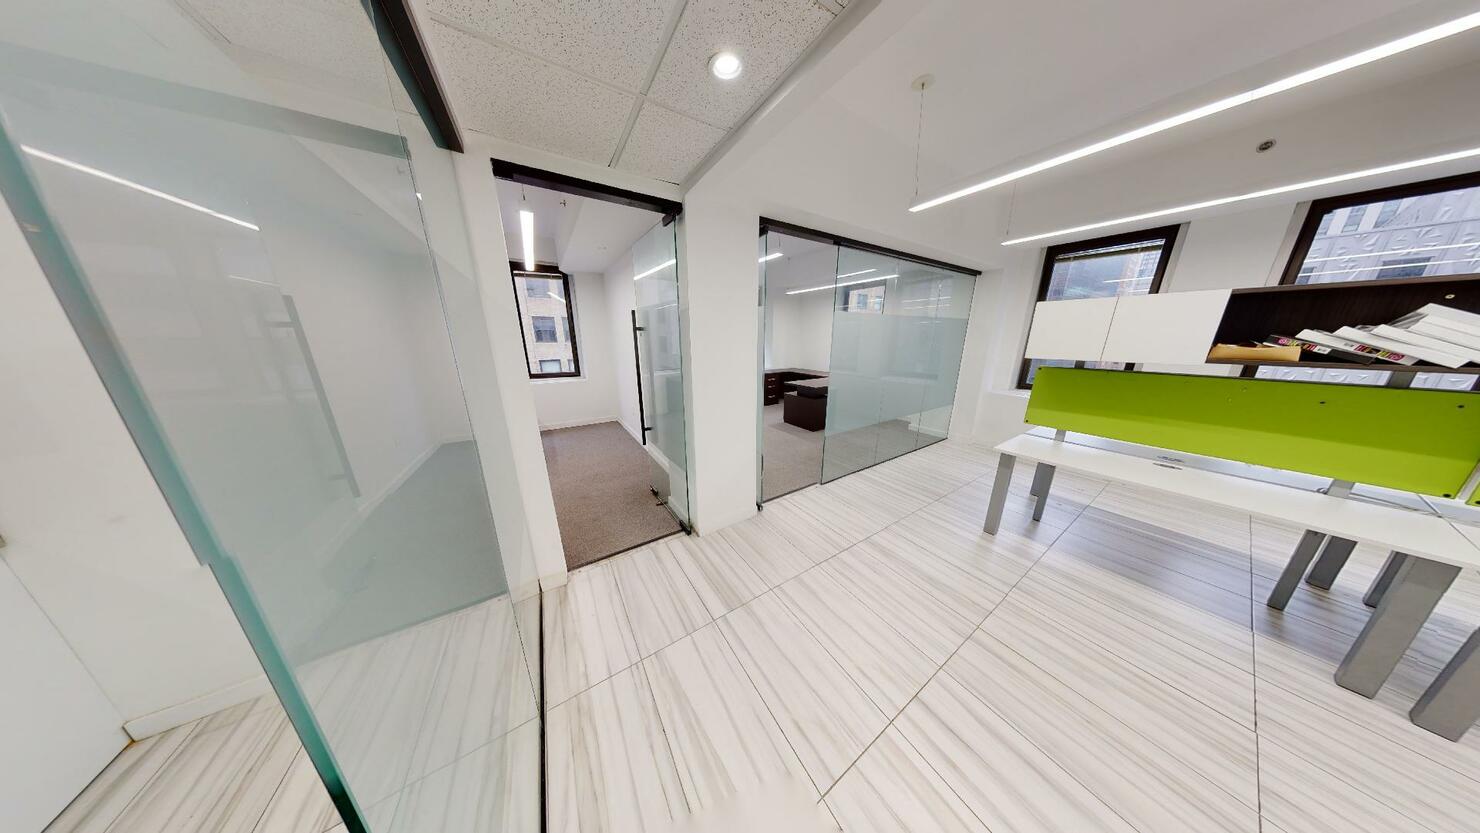 369 Lexington Avenue Office Space - Glass Walls